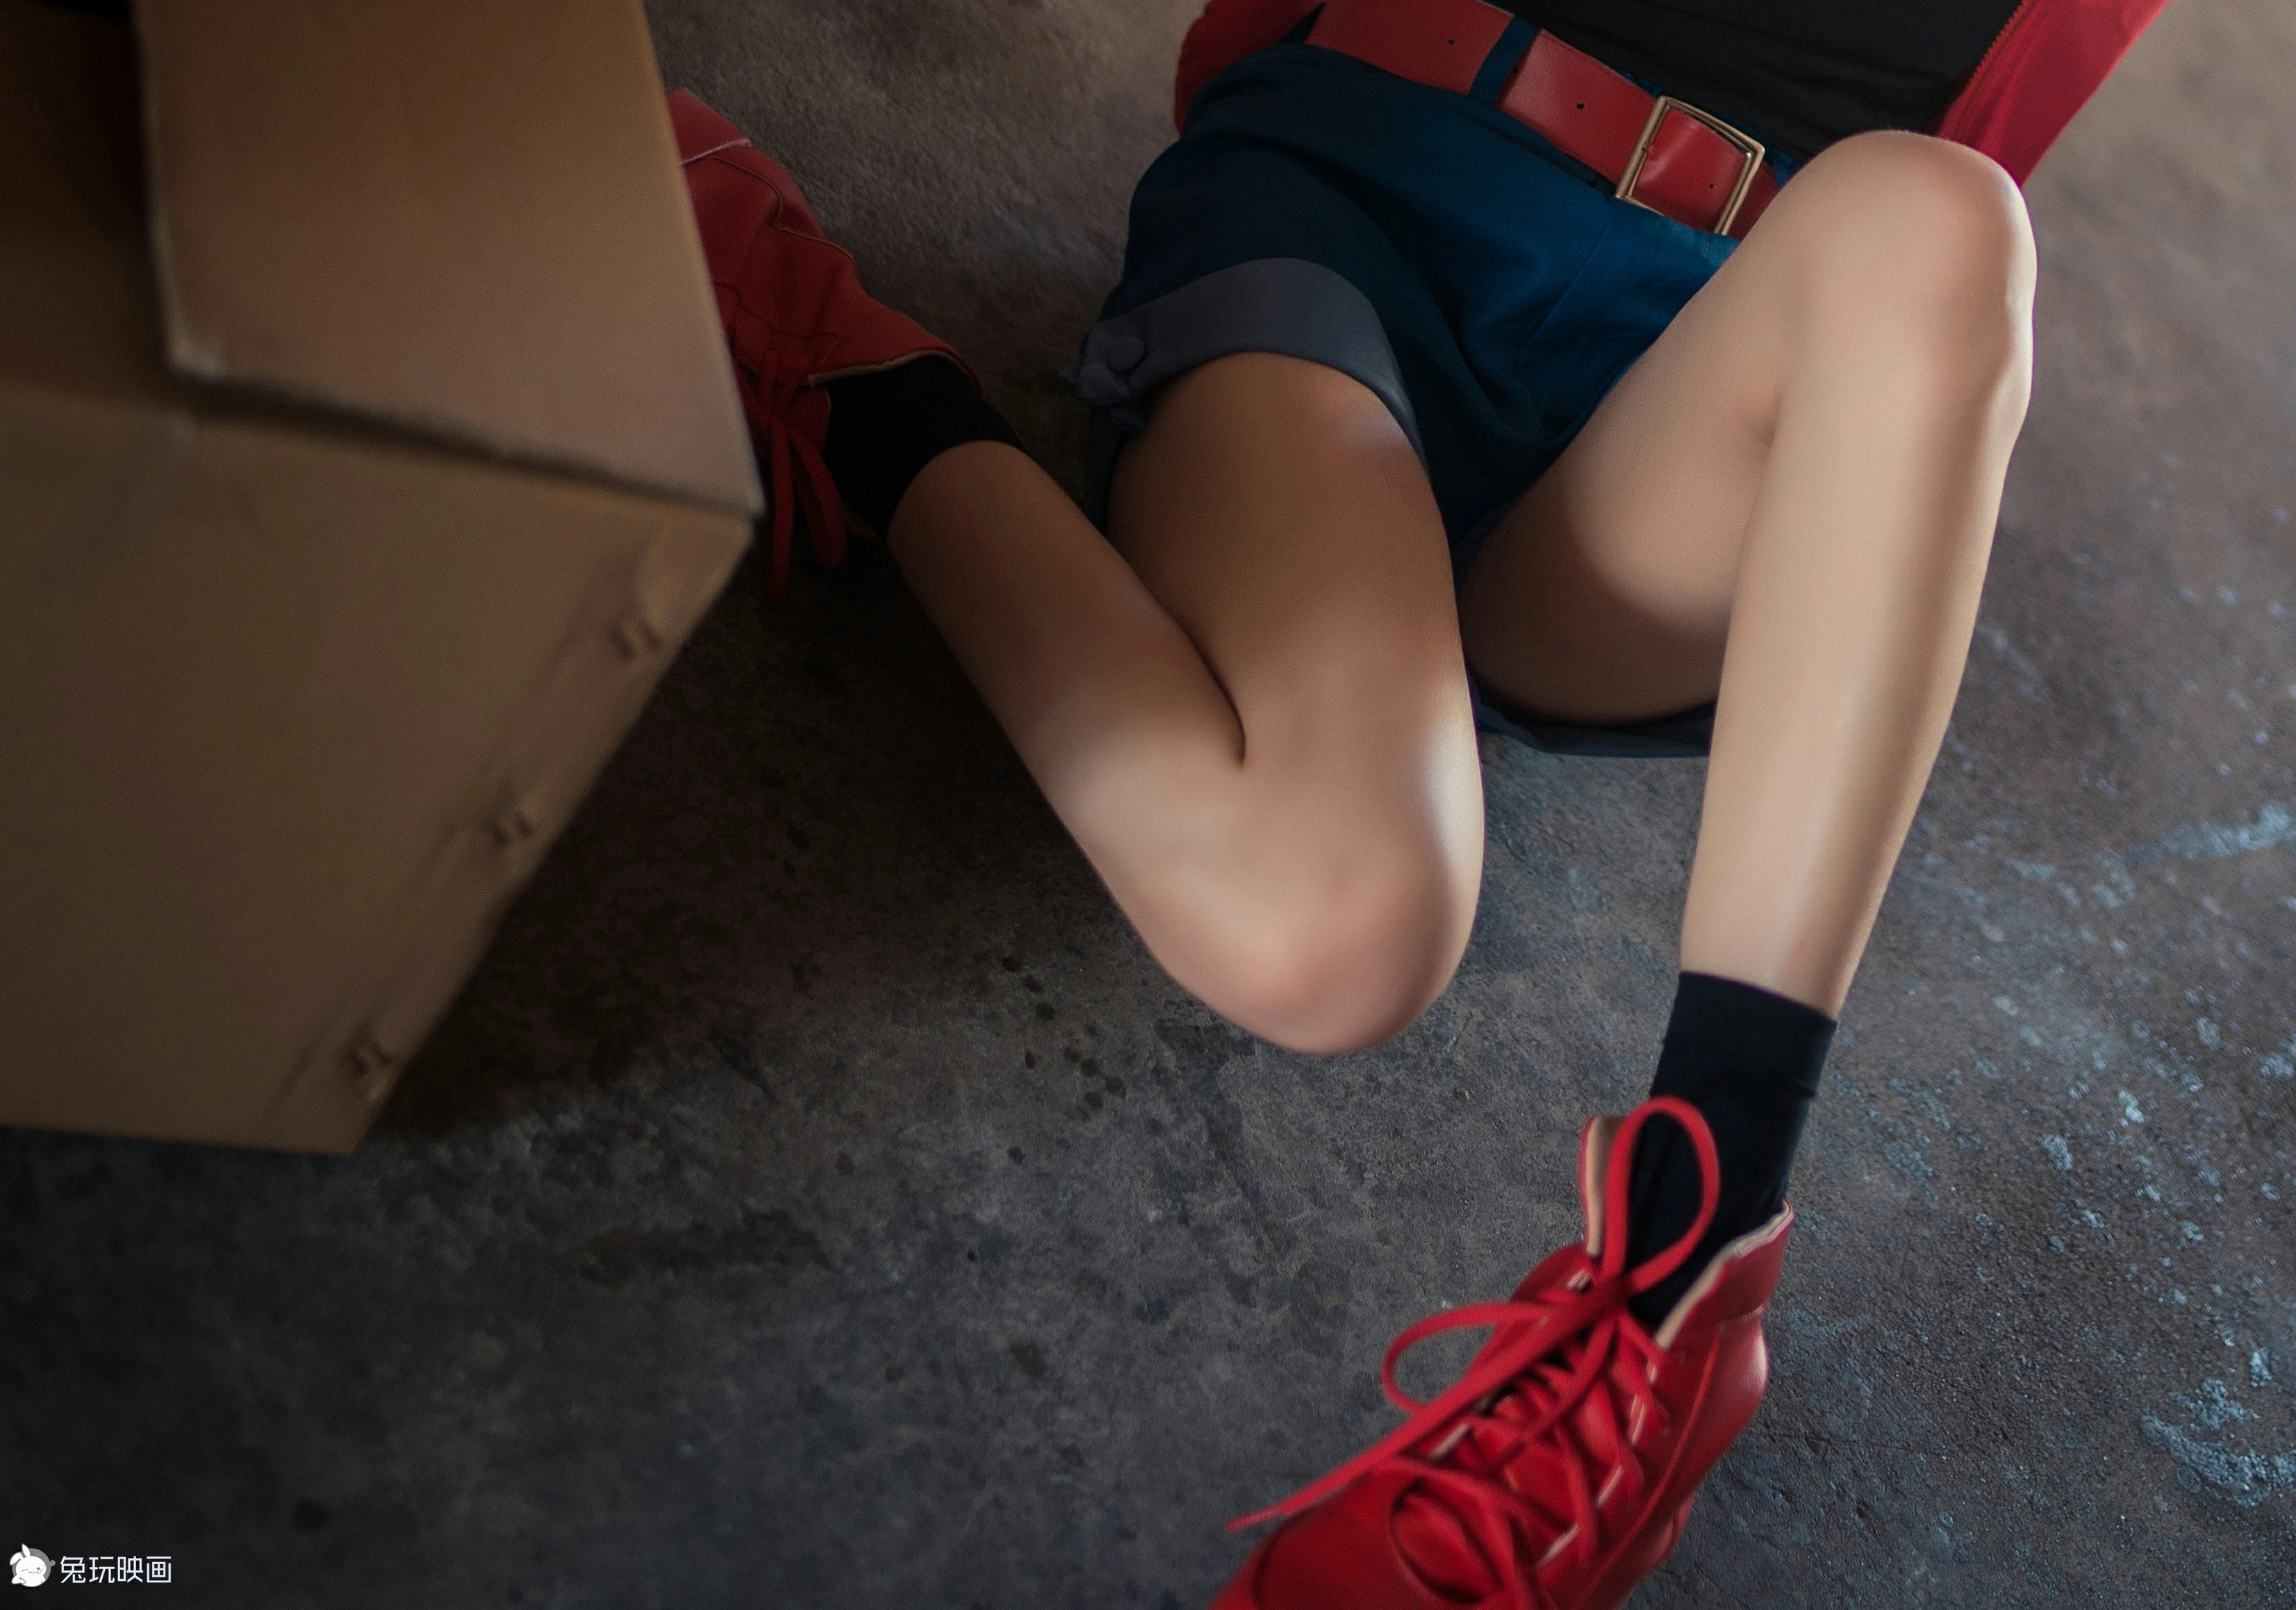 清纯萝莉少女 绮太郎Kitaro 工作细胞 红色衬衫加蓝色短裤街拍写真,